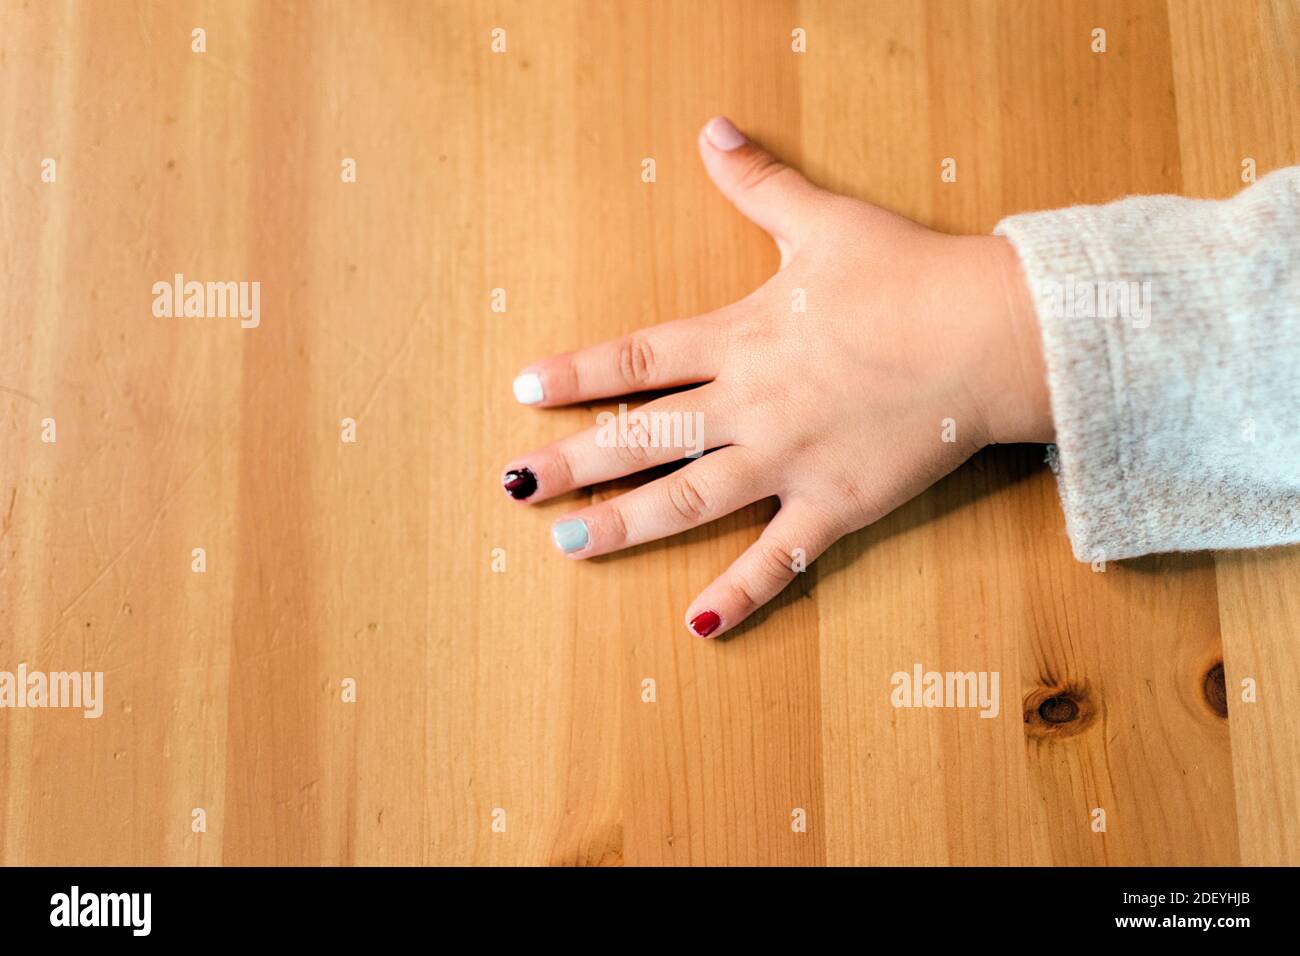 Stock Foto von unerkannt Mädchen zeigt ihre lackierten Nägel. Stockfoto